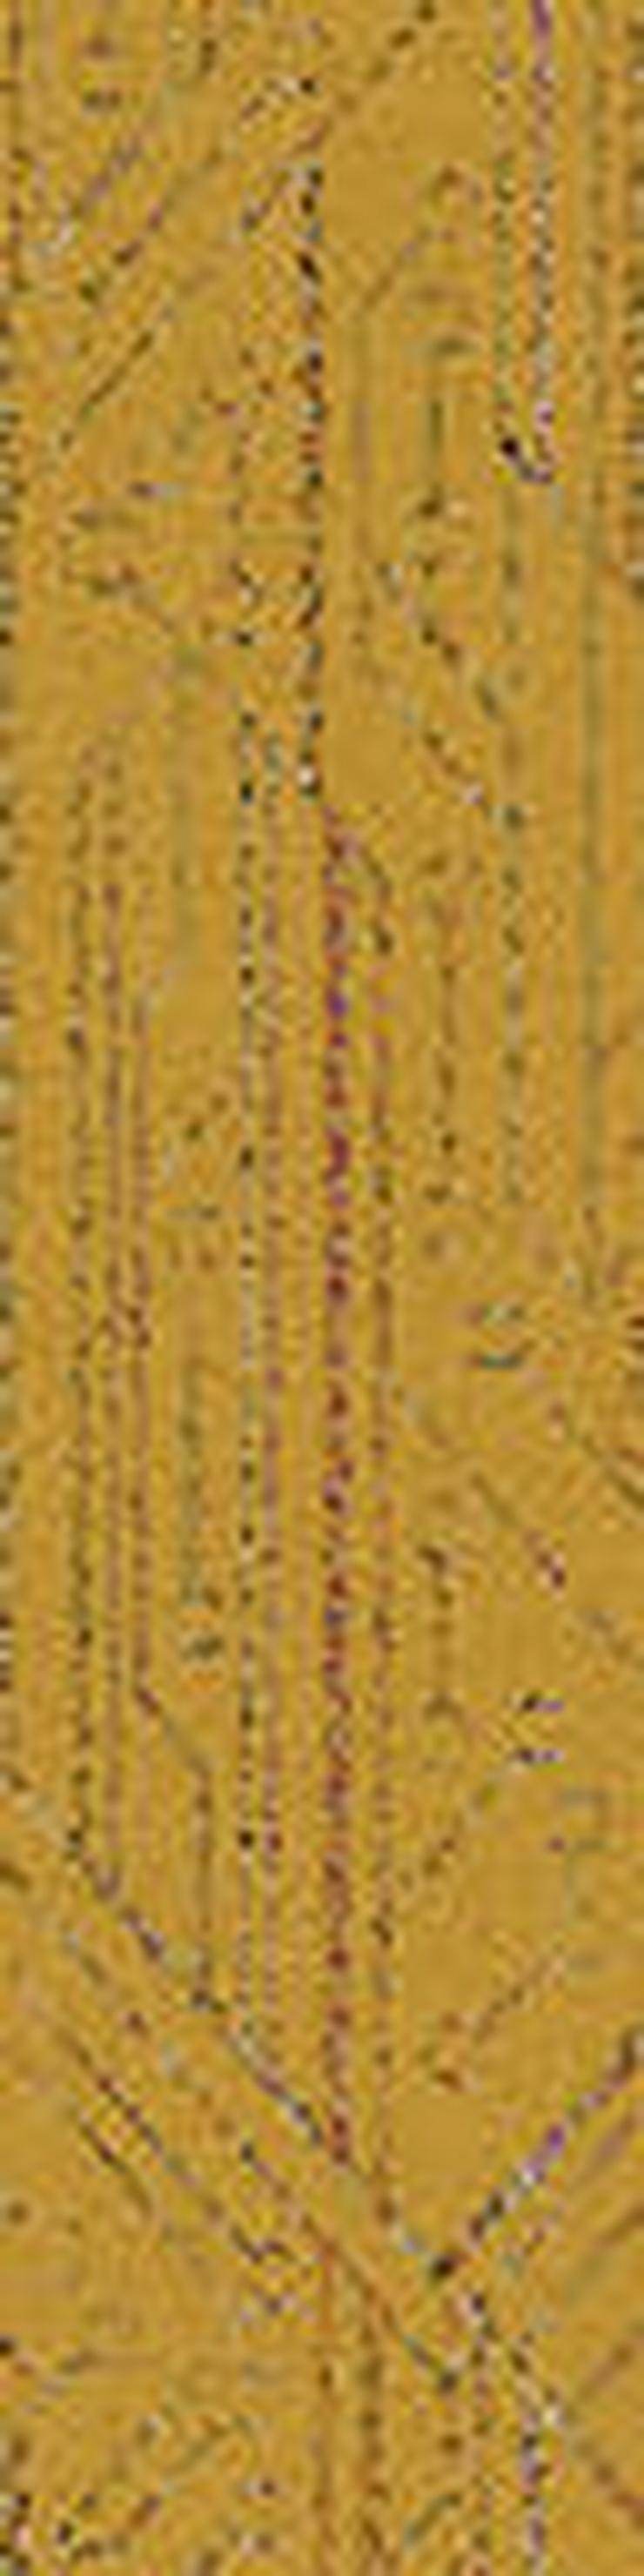 Jetzt im Angebot: Schöne gelbe 25X100cm Interface Teppichfliesen - Teppiche - Bild 3